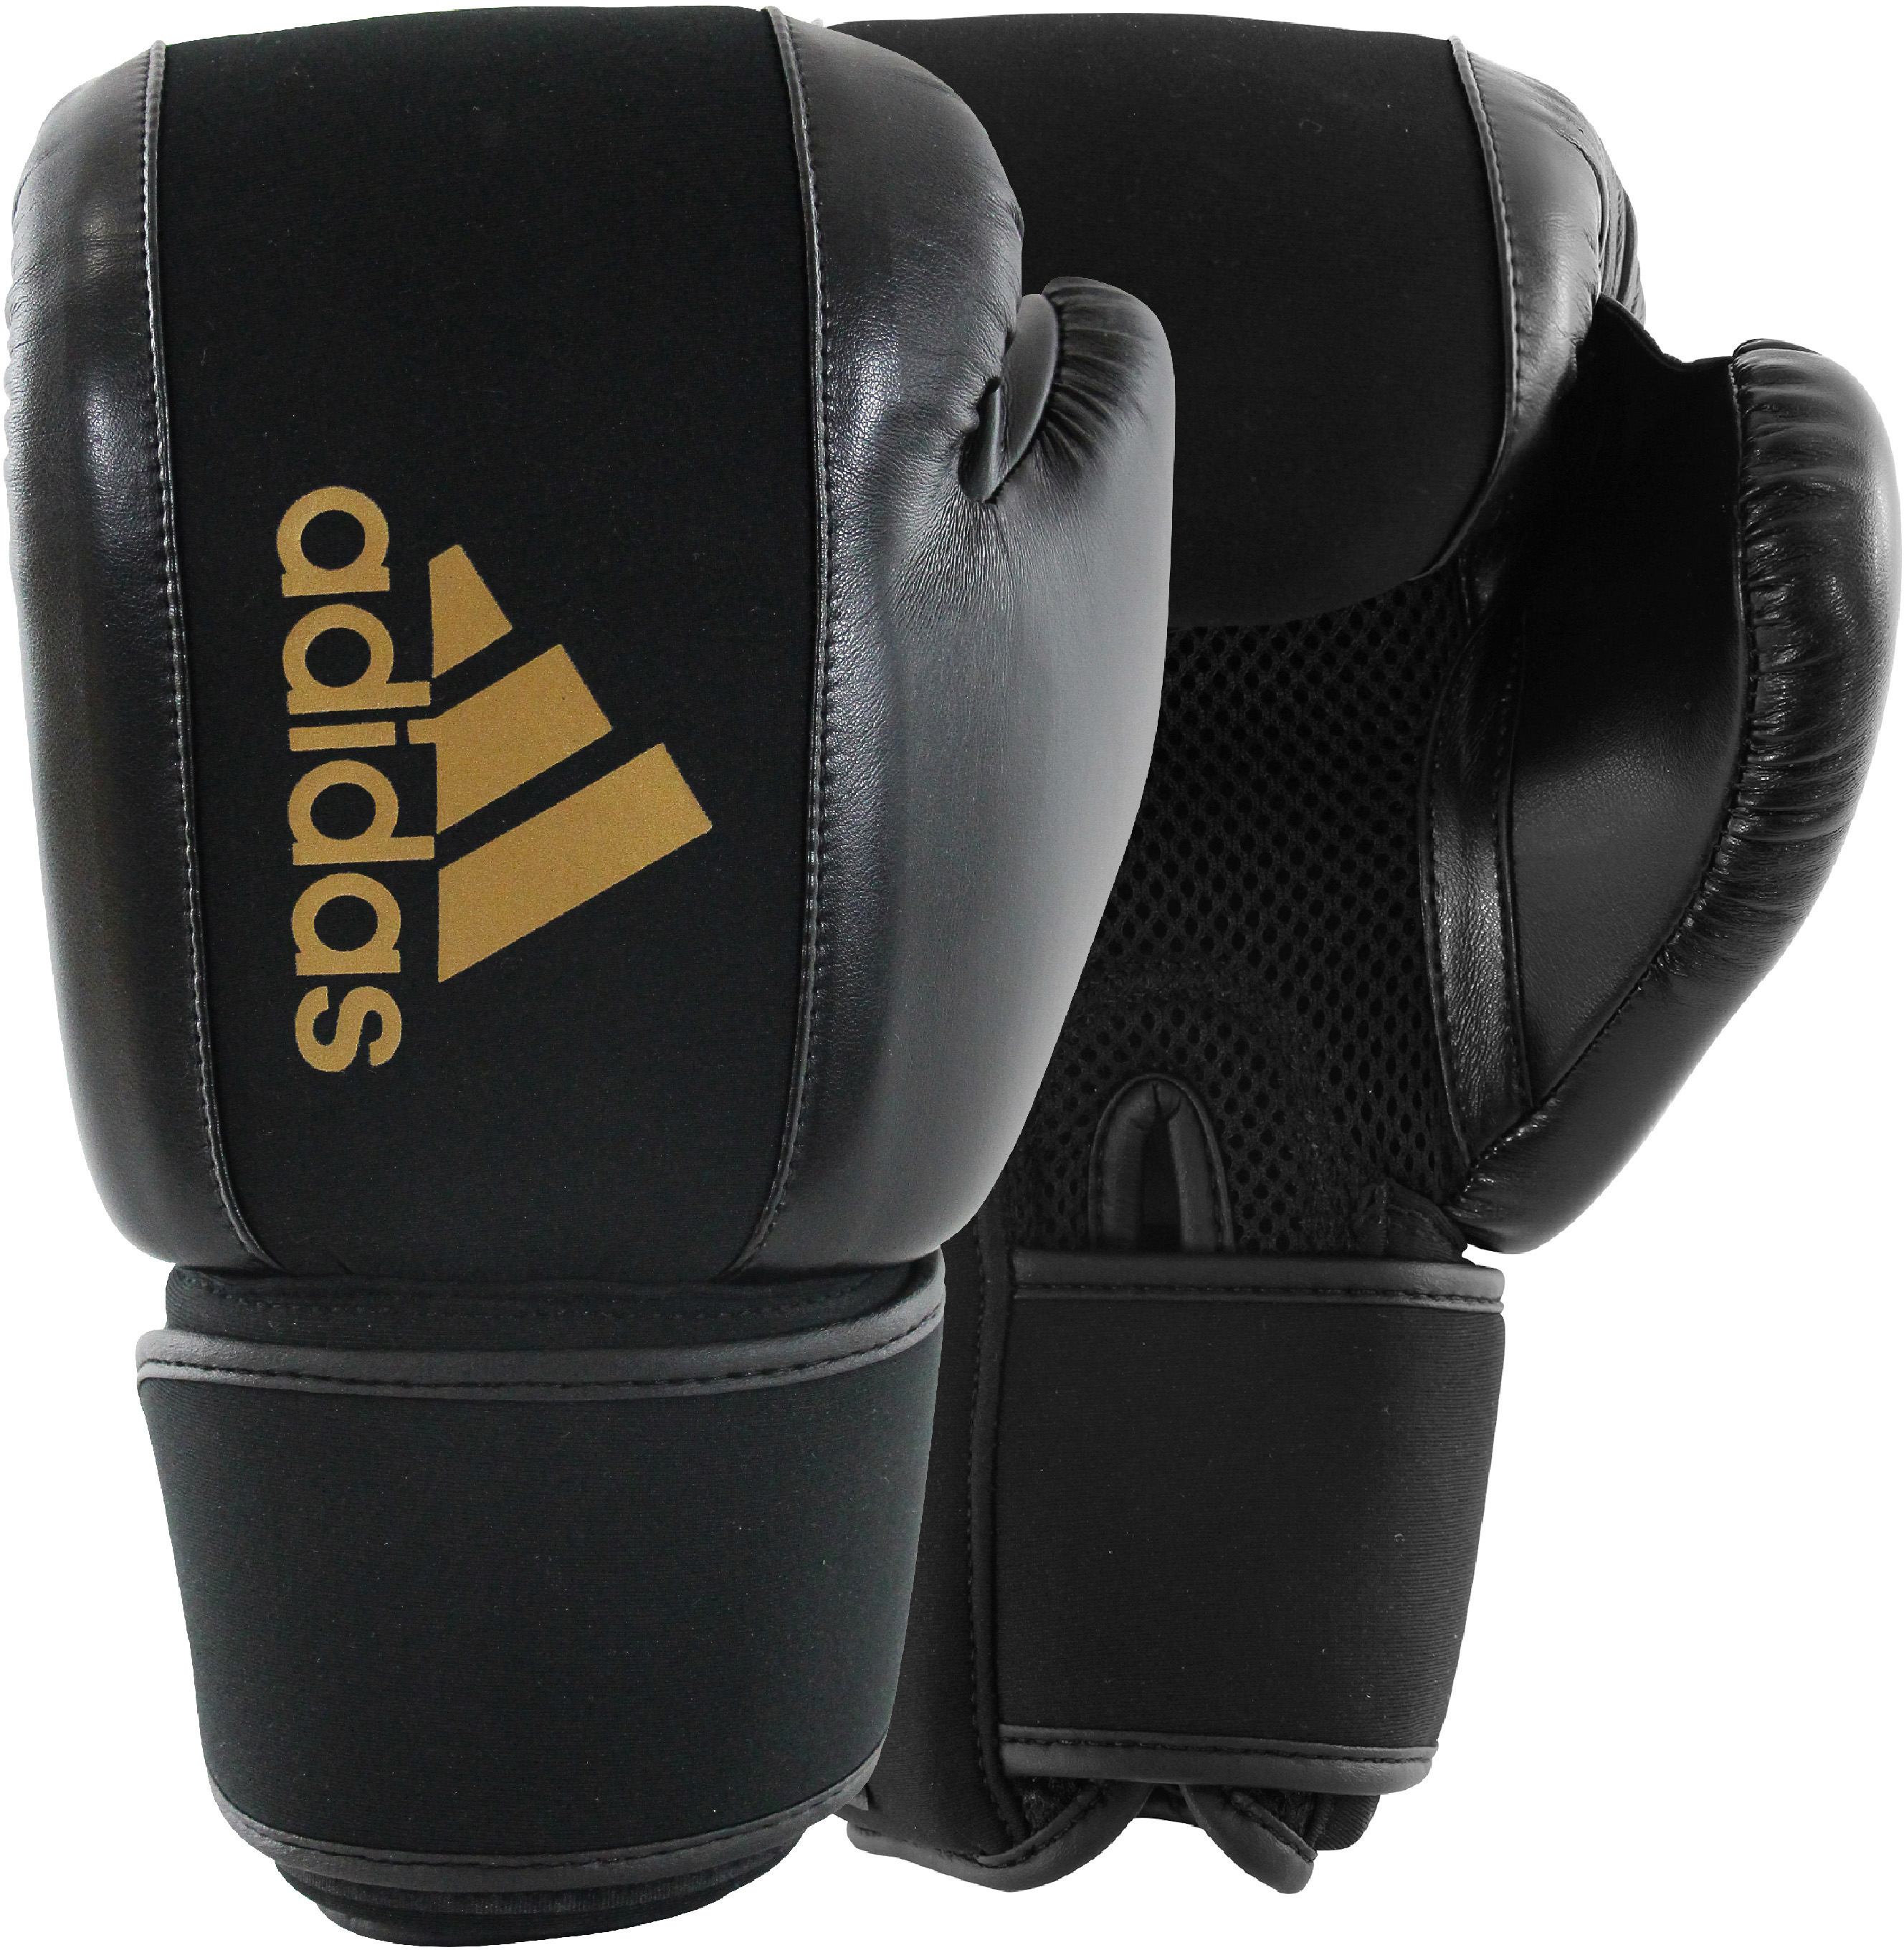 adidas Erwachsene Boxing Gloves Washable Boxhandschuhe Waschbar, schwarz/Gold, L/XL